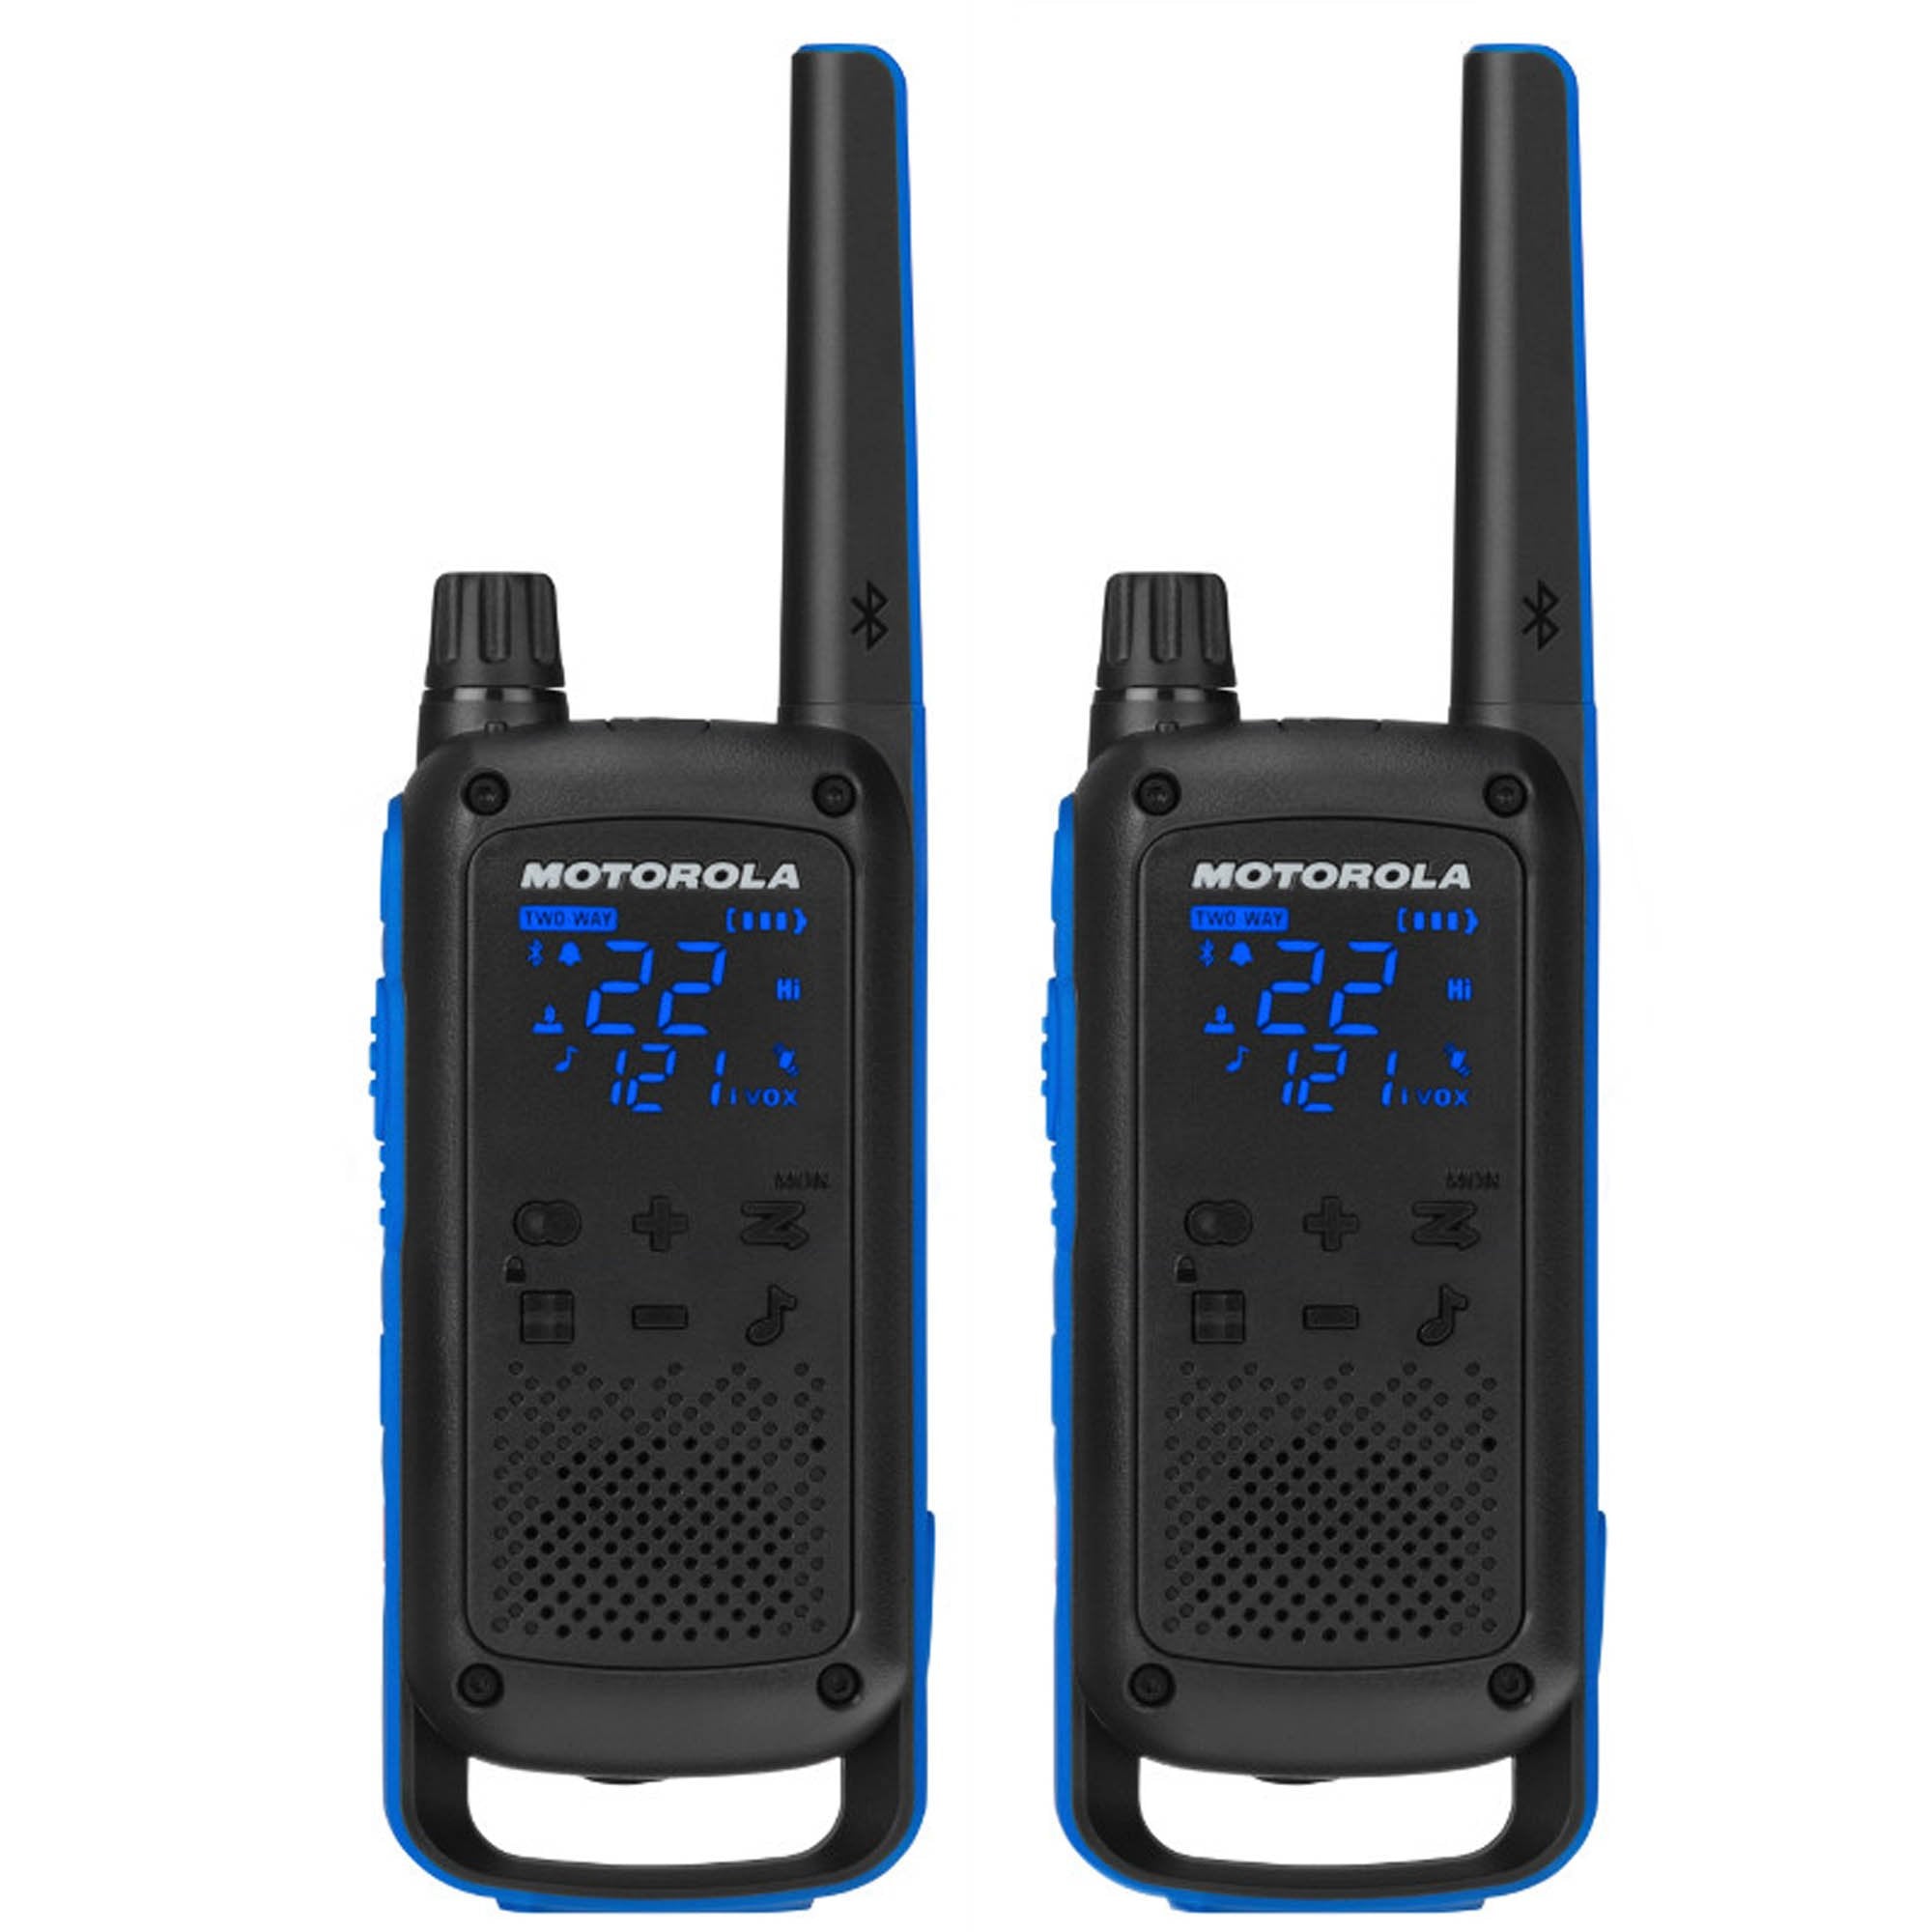 Pack of Motorola DLR1060 Walkie Talkie Radios - 1